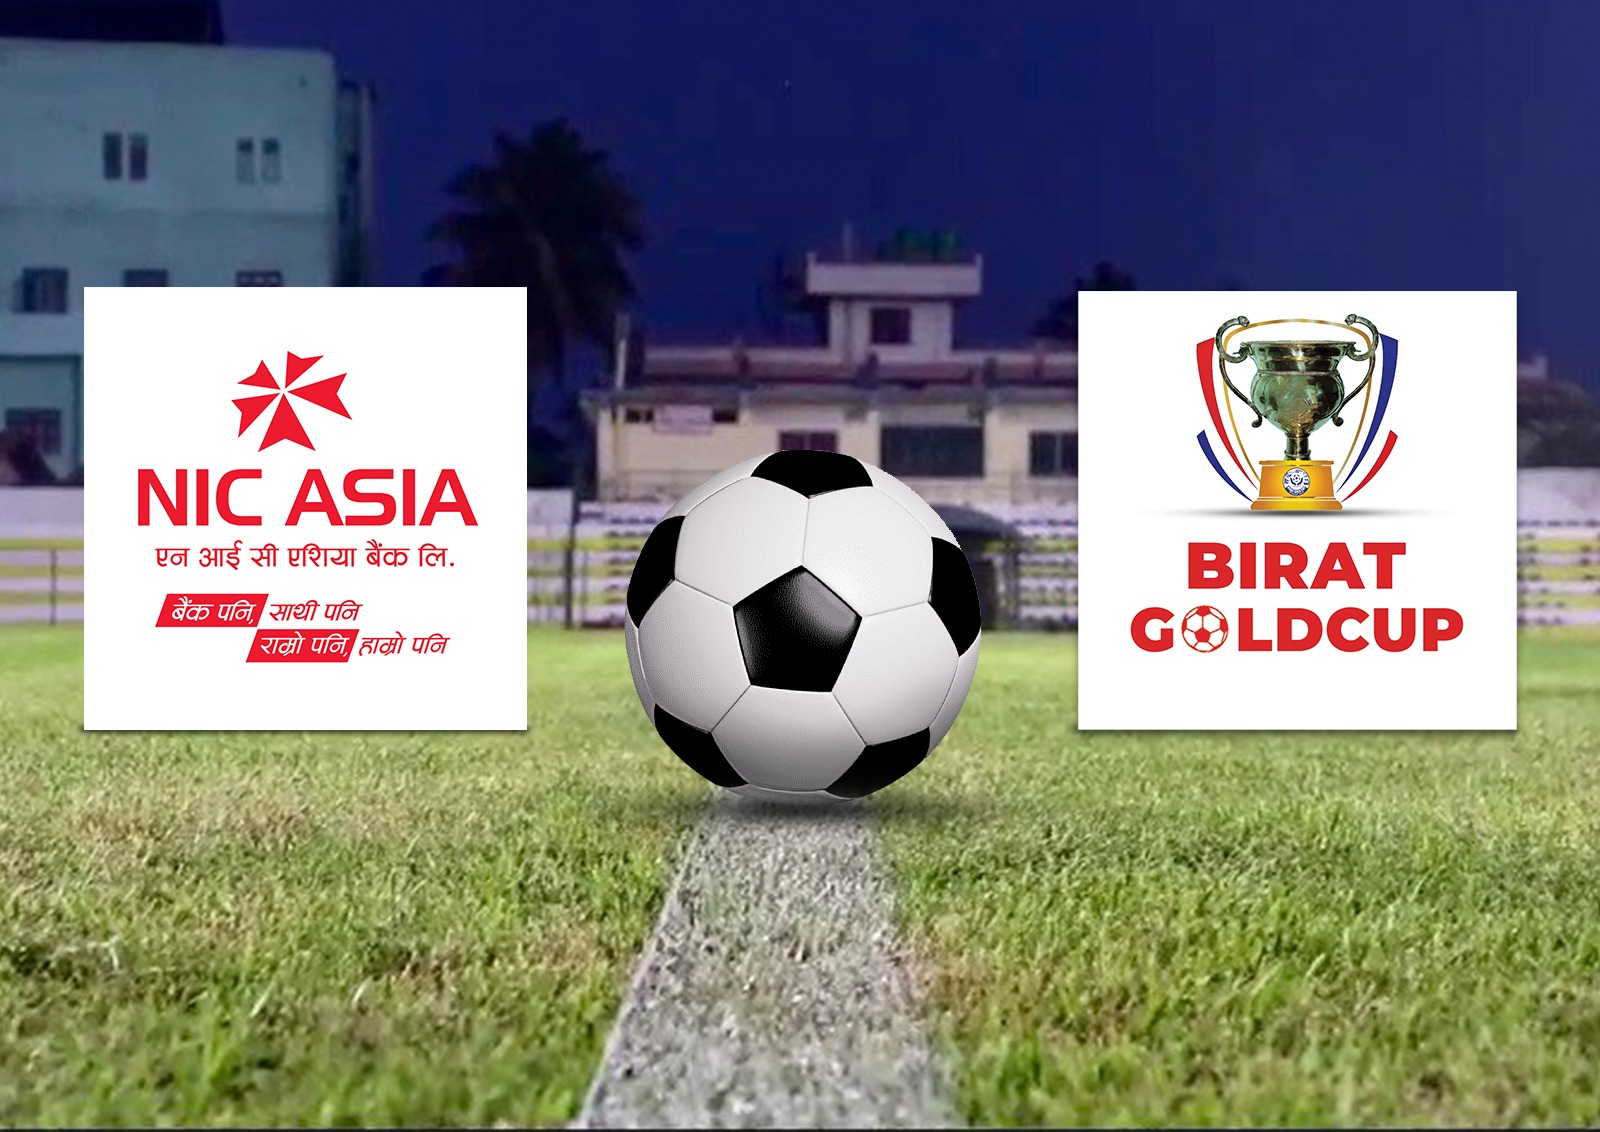 बिराट गोल्ड कप फुटबलको प्रायोजकमा एनआइसी एशिया बैंक